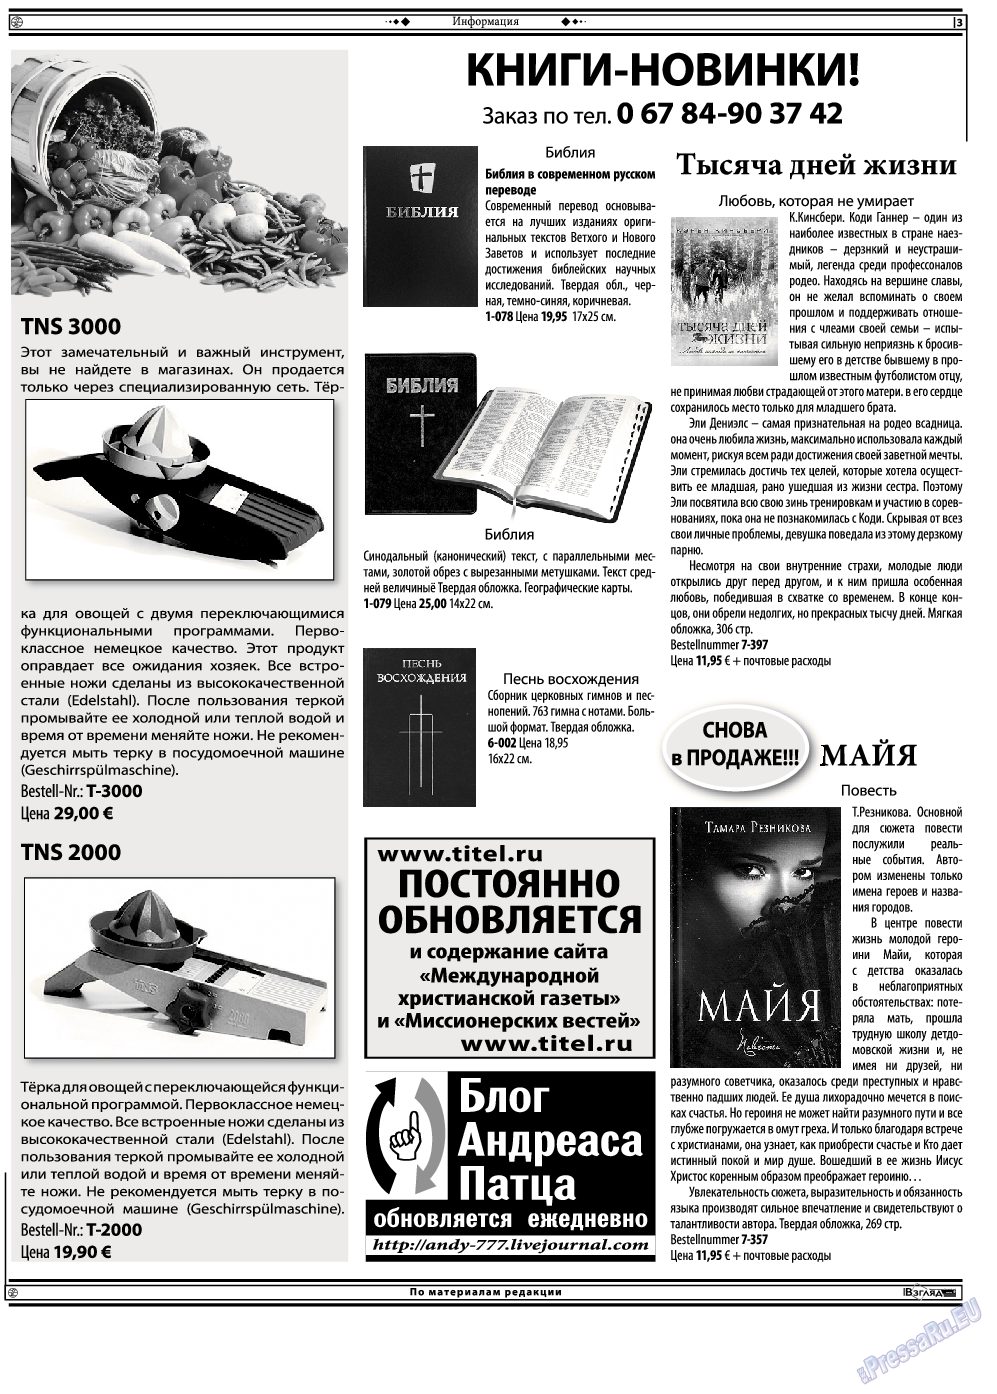 Христианская газета, газета. 2013 №12 стр.17